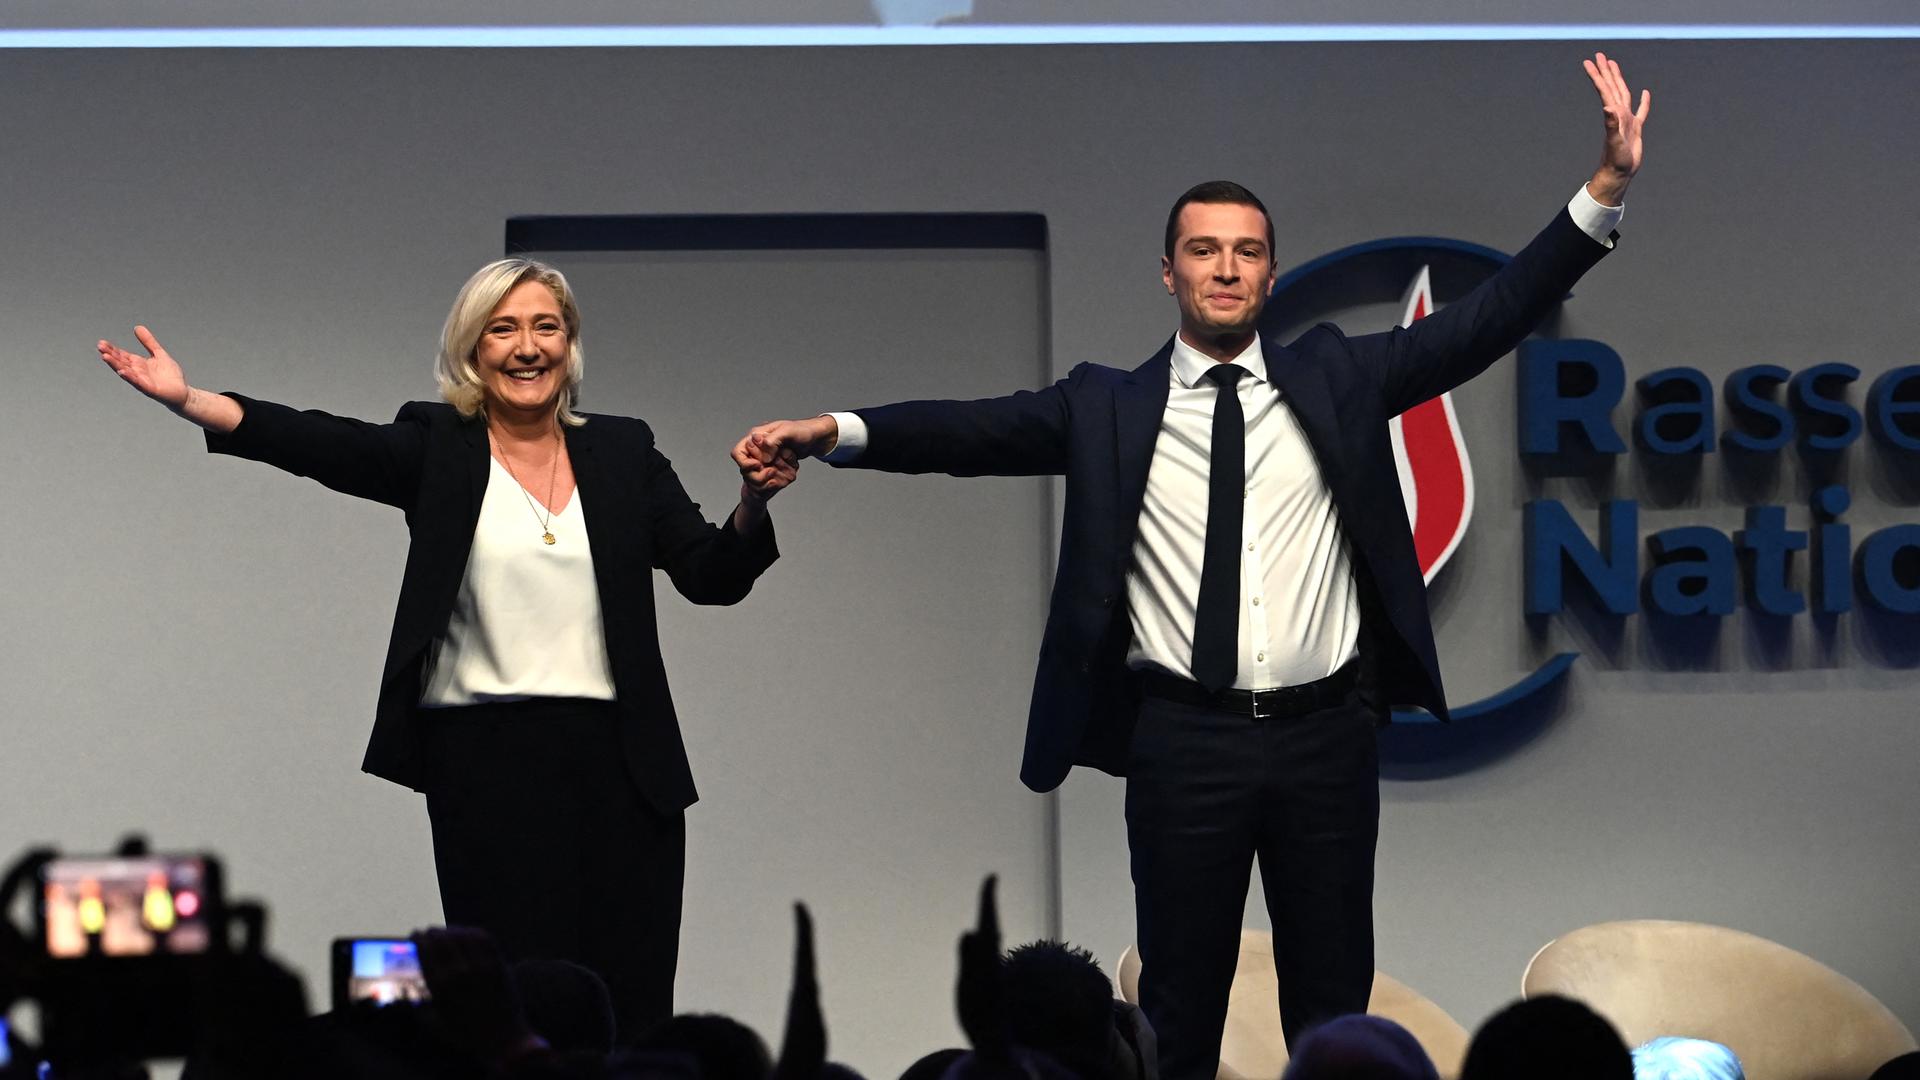 Die Fraktionsvorsitzende der französischen rechtsradikalen Partei Rassemblement National (RN), Marine Le Pen, und der neu gewählte Parteivorsitzende Jordan Bardella stehen auf einer Bühne, halten sich an der Hand und winken ins Publikum.